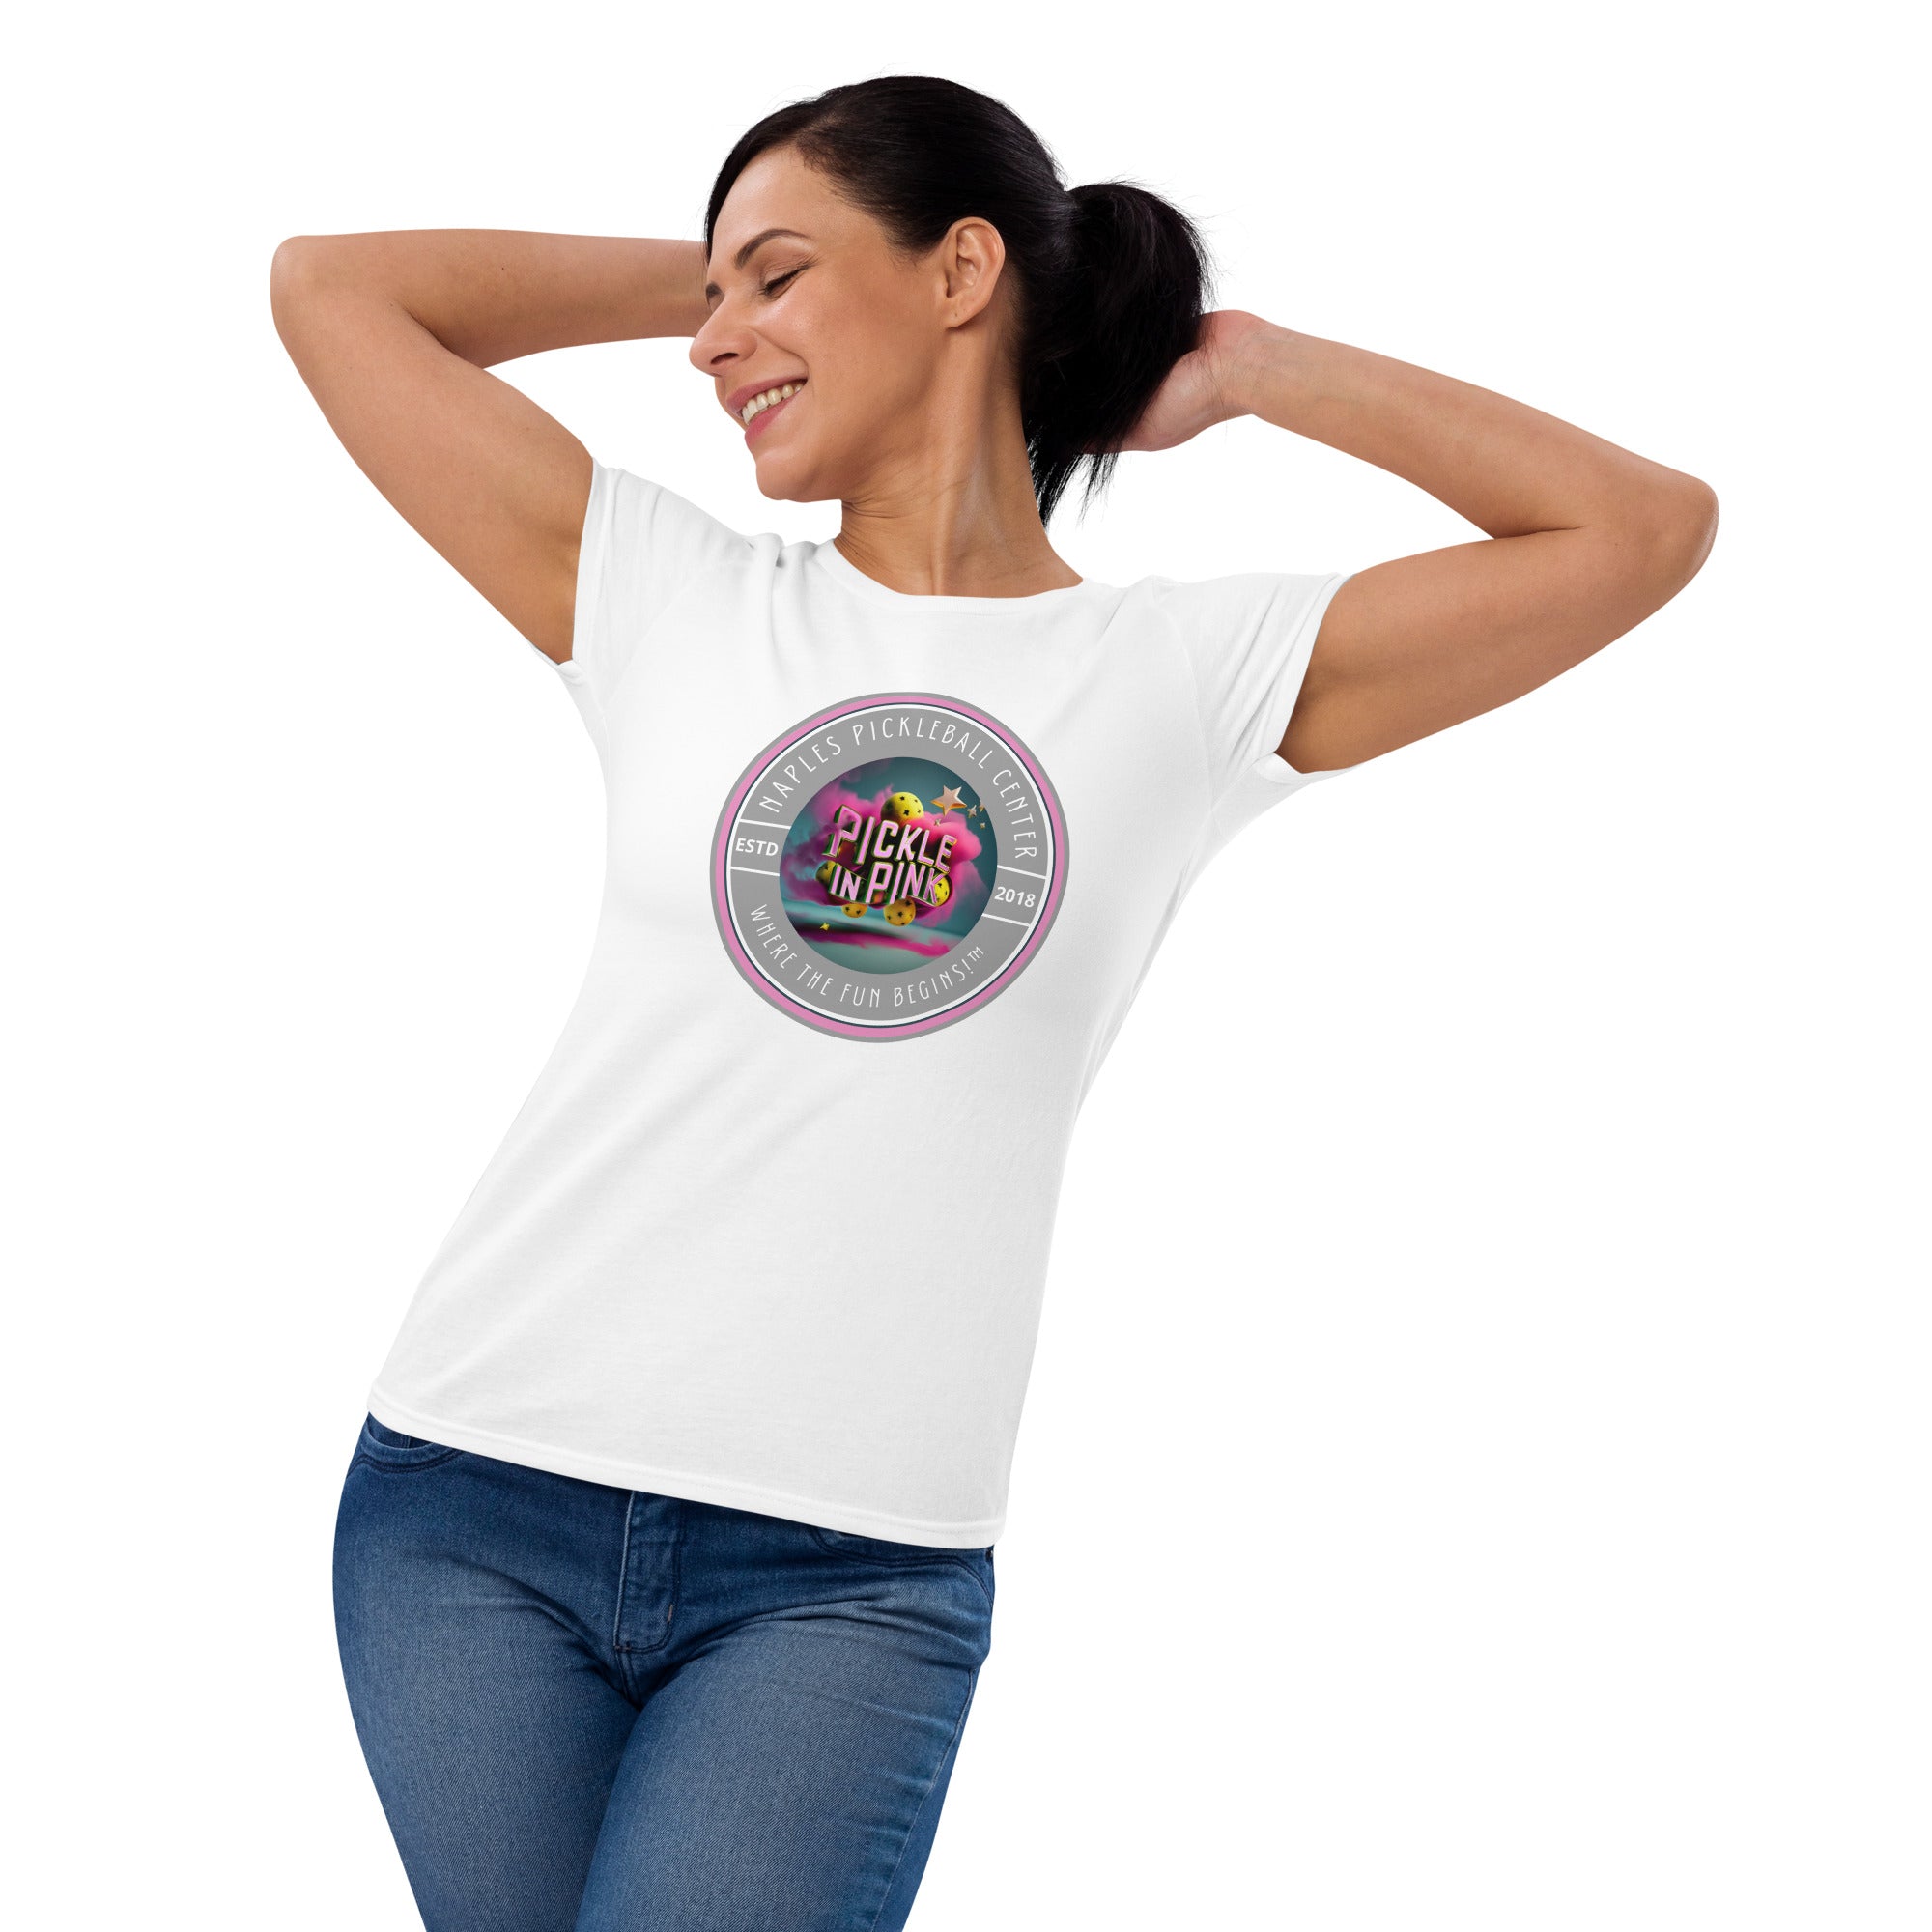 "Pickle in Pink" Naples Pickleball Center Women's short sleeve t-shirt!